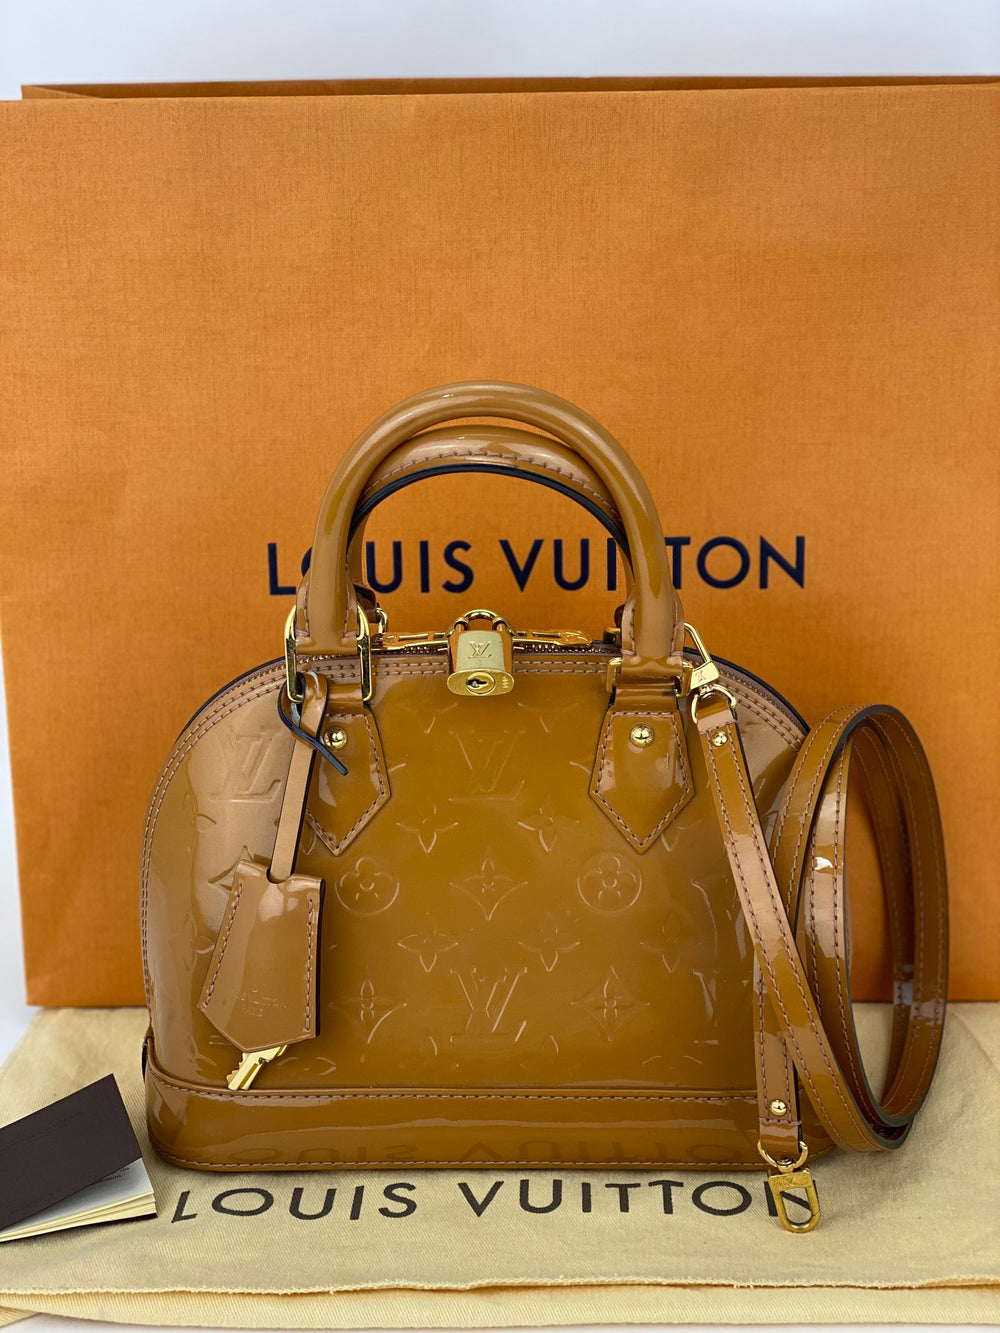 Louis Vuitton Alma BB Bag // 6 Month Honest Review - Louis Vuitton Review 